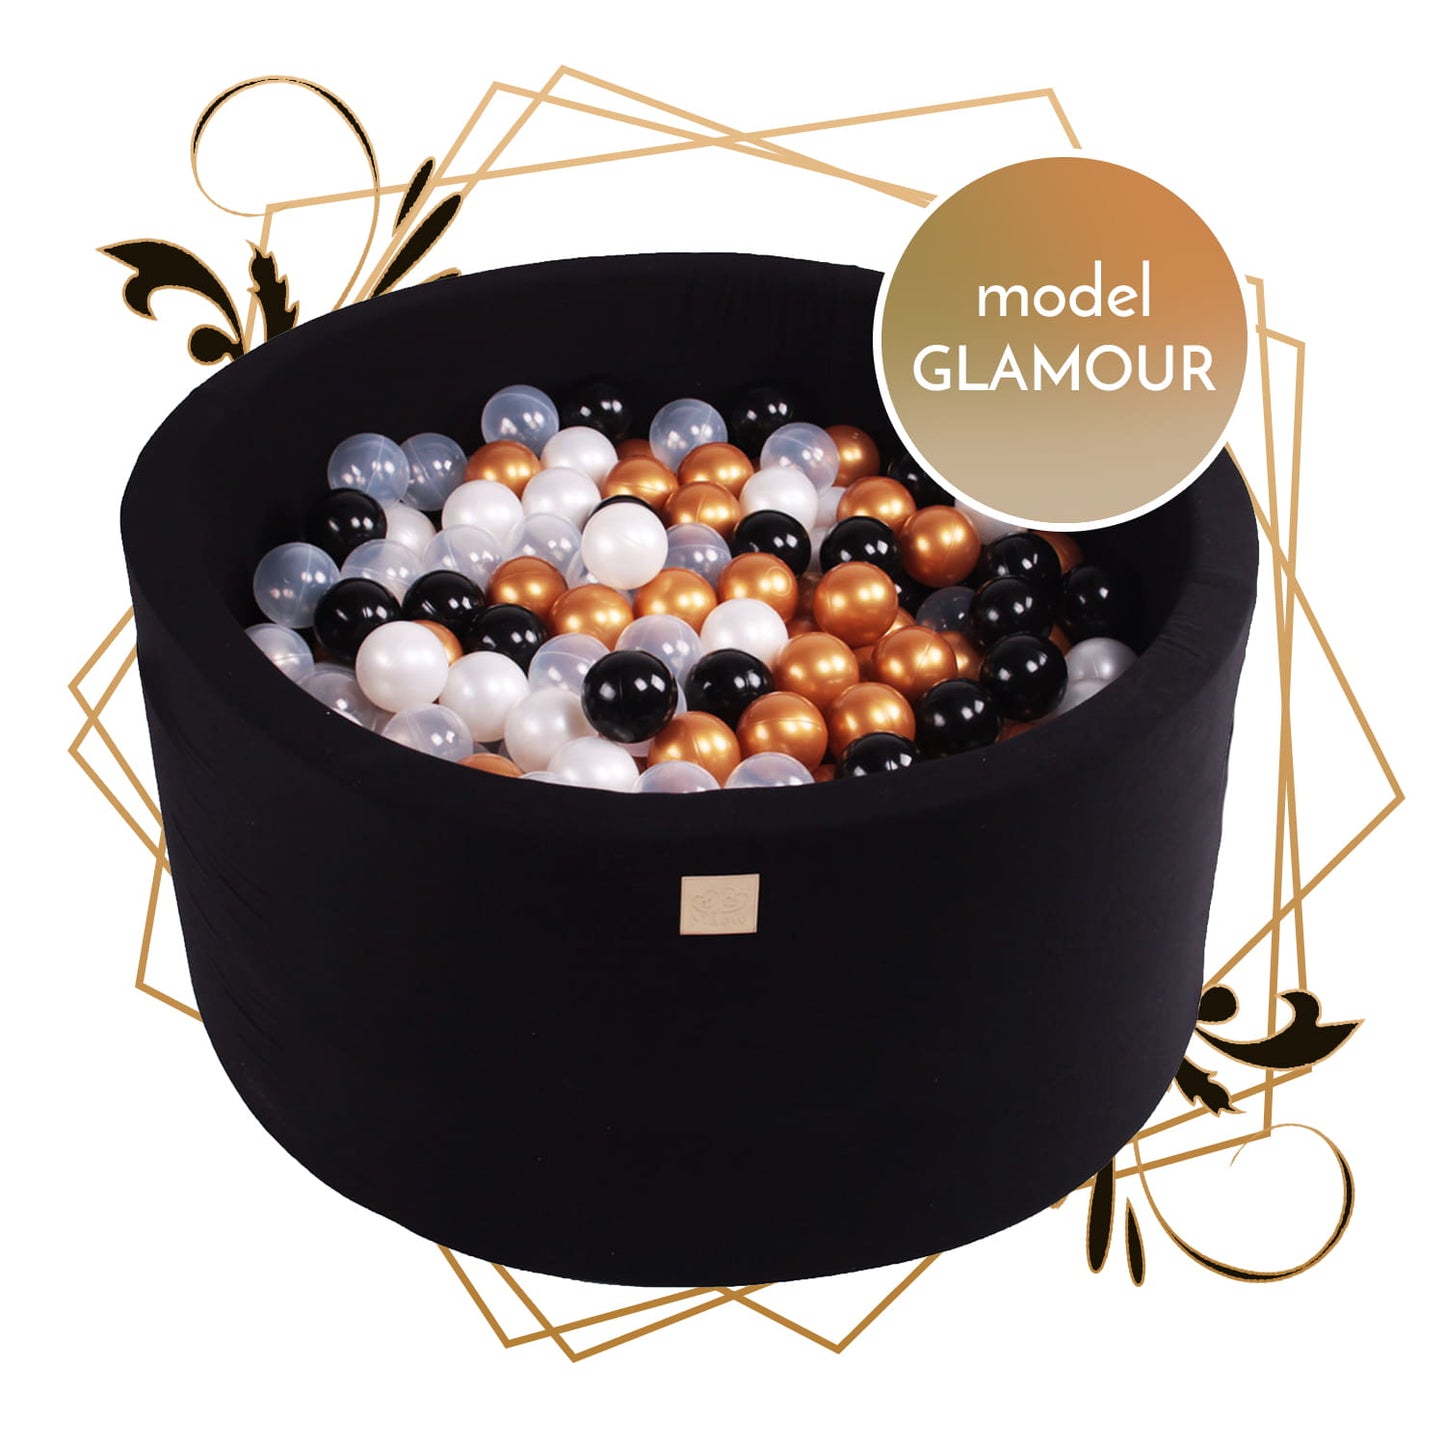 MeowBaby® Model Glamour Suchy Basen z Piłeczkami 250 szt Okrągły Gotowy Zestaw